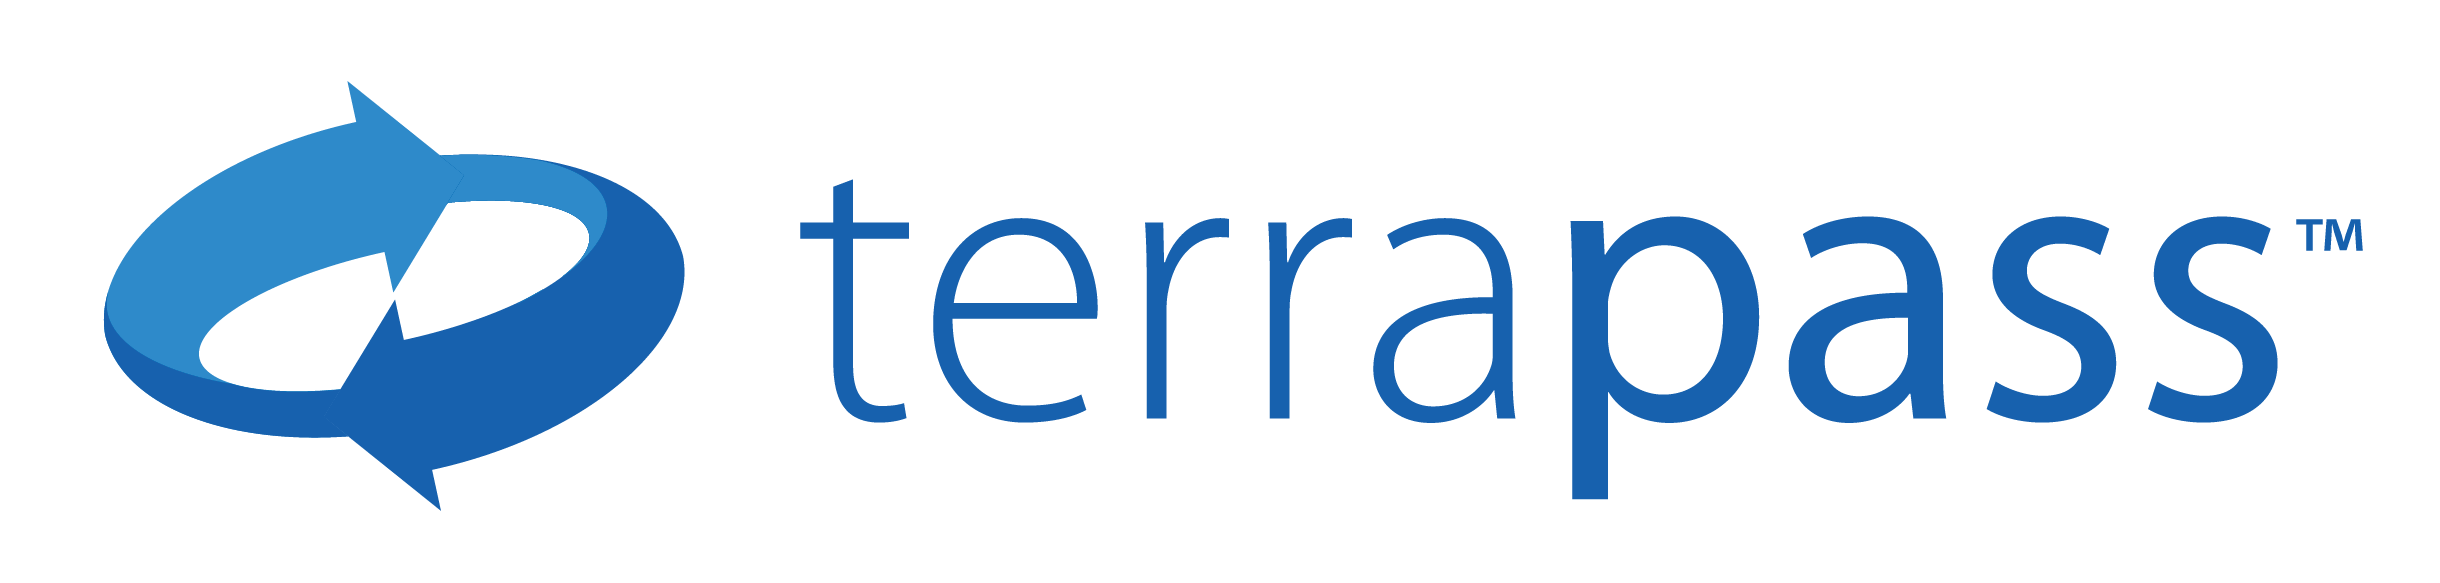 terapass logo